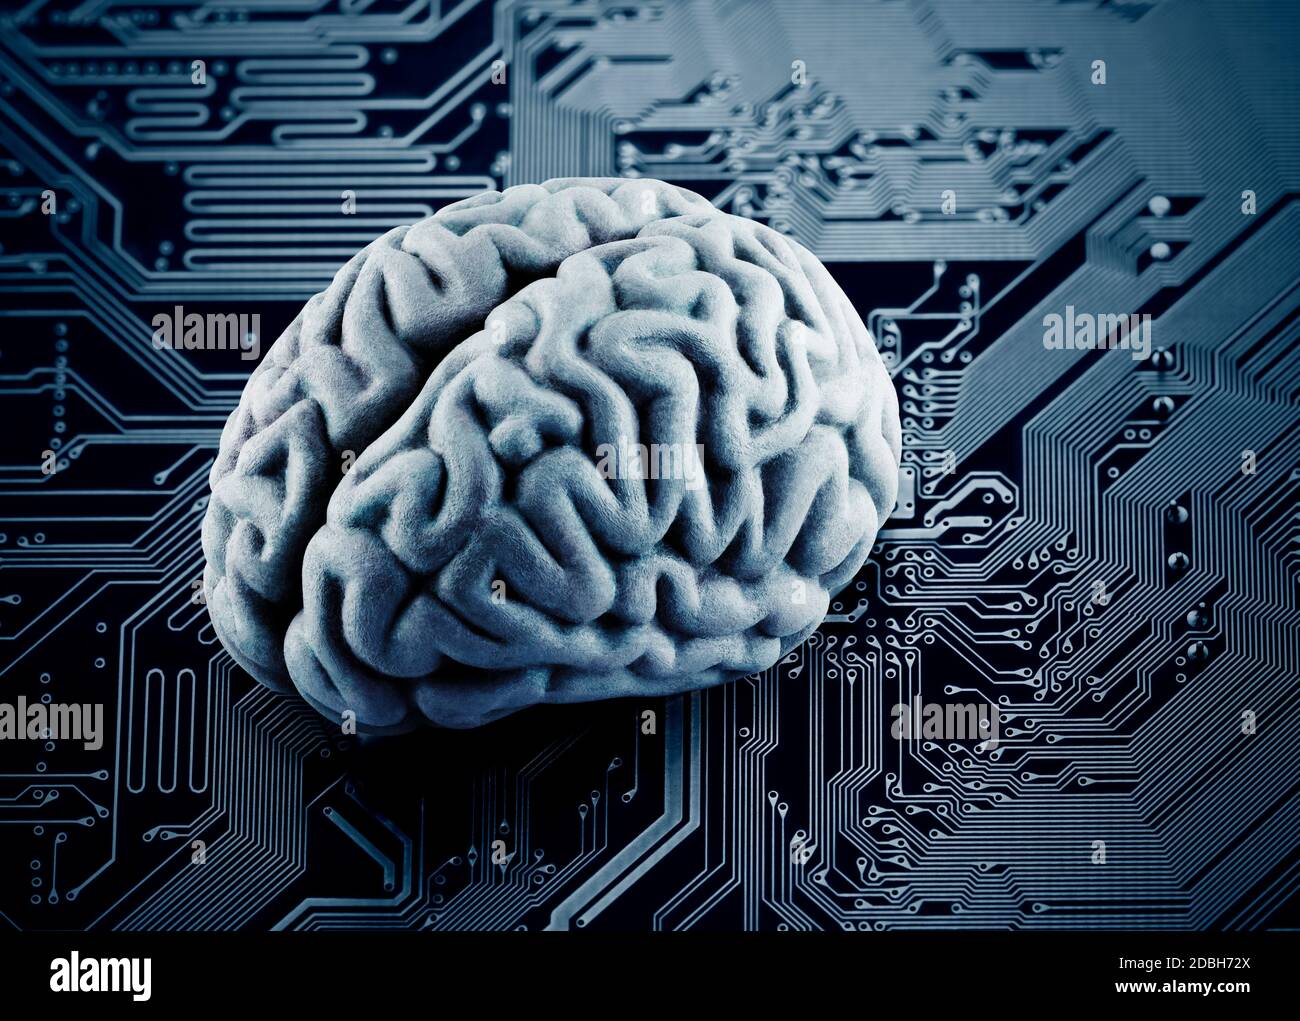 Human brain on computer circuit board Stock Photo